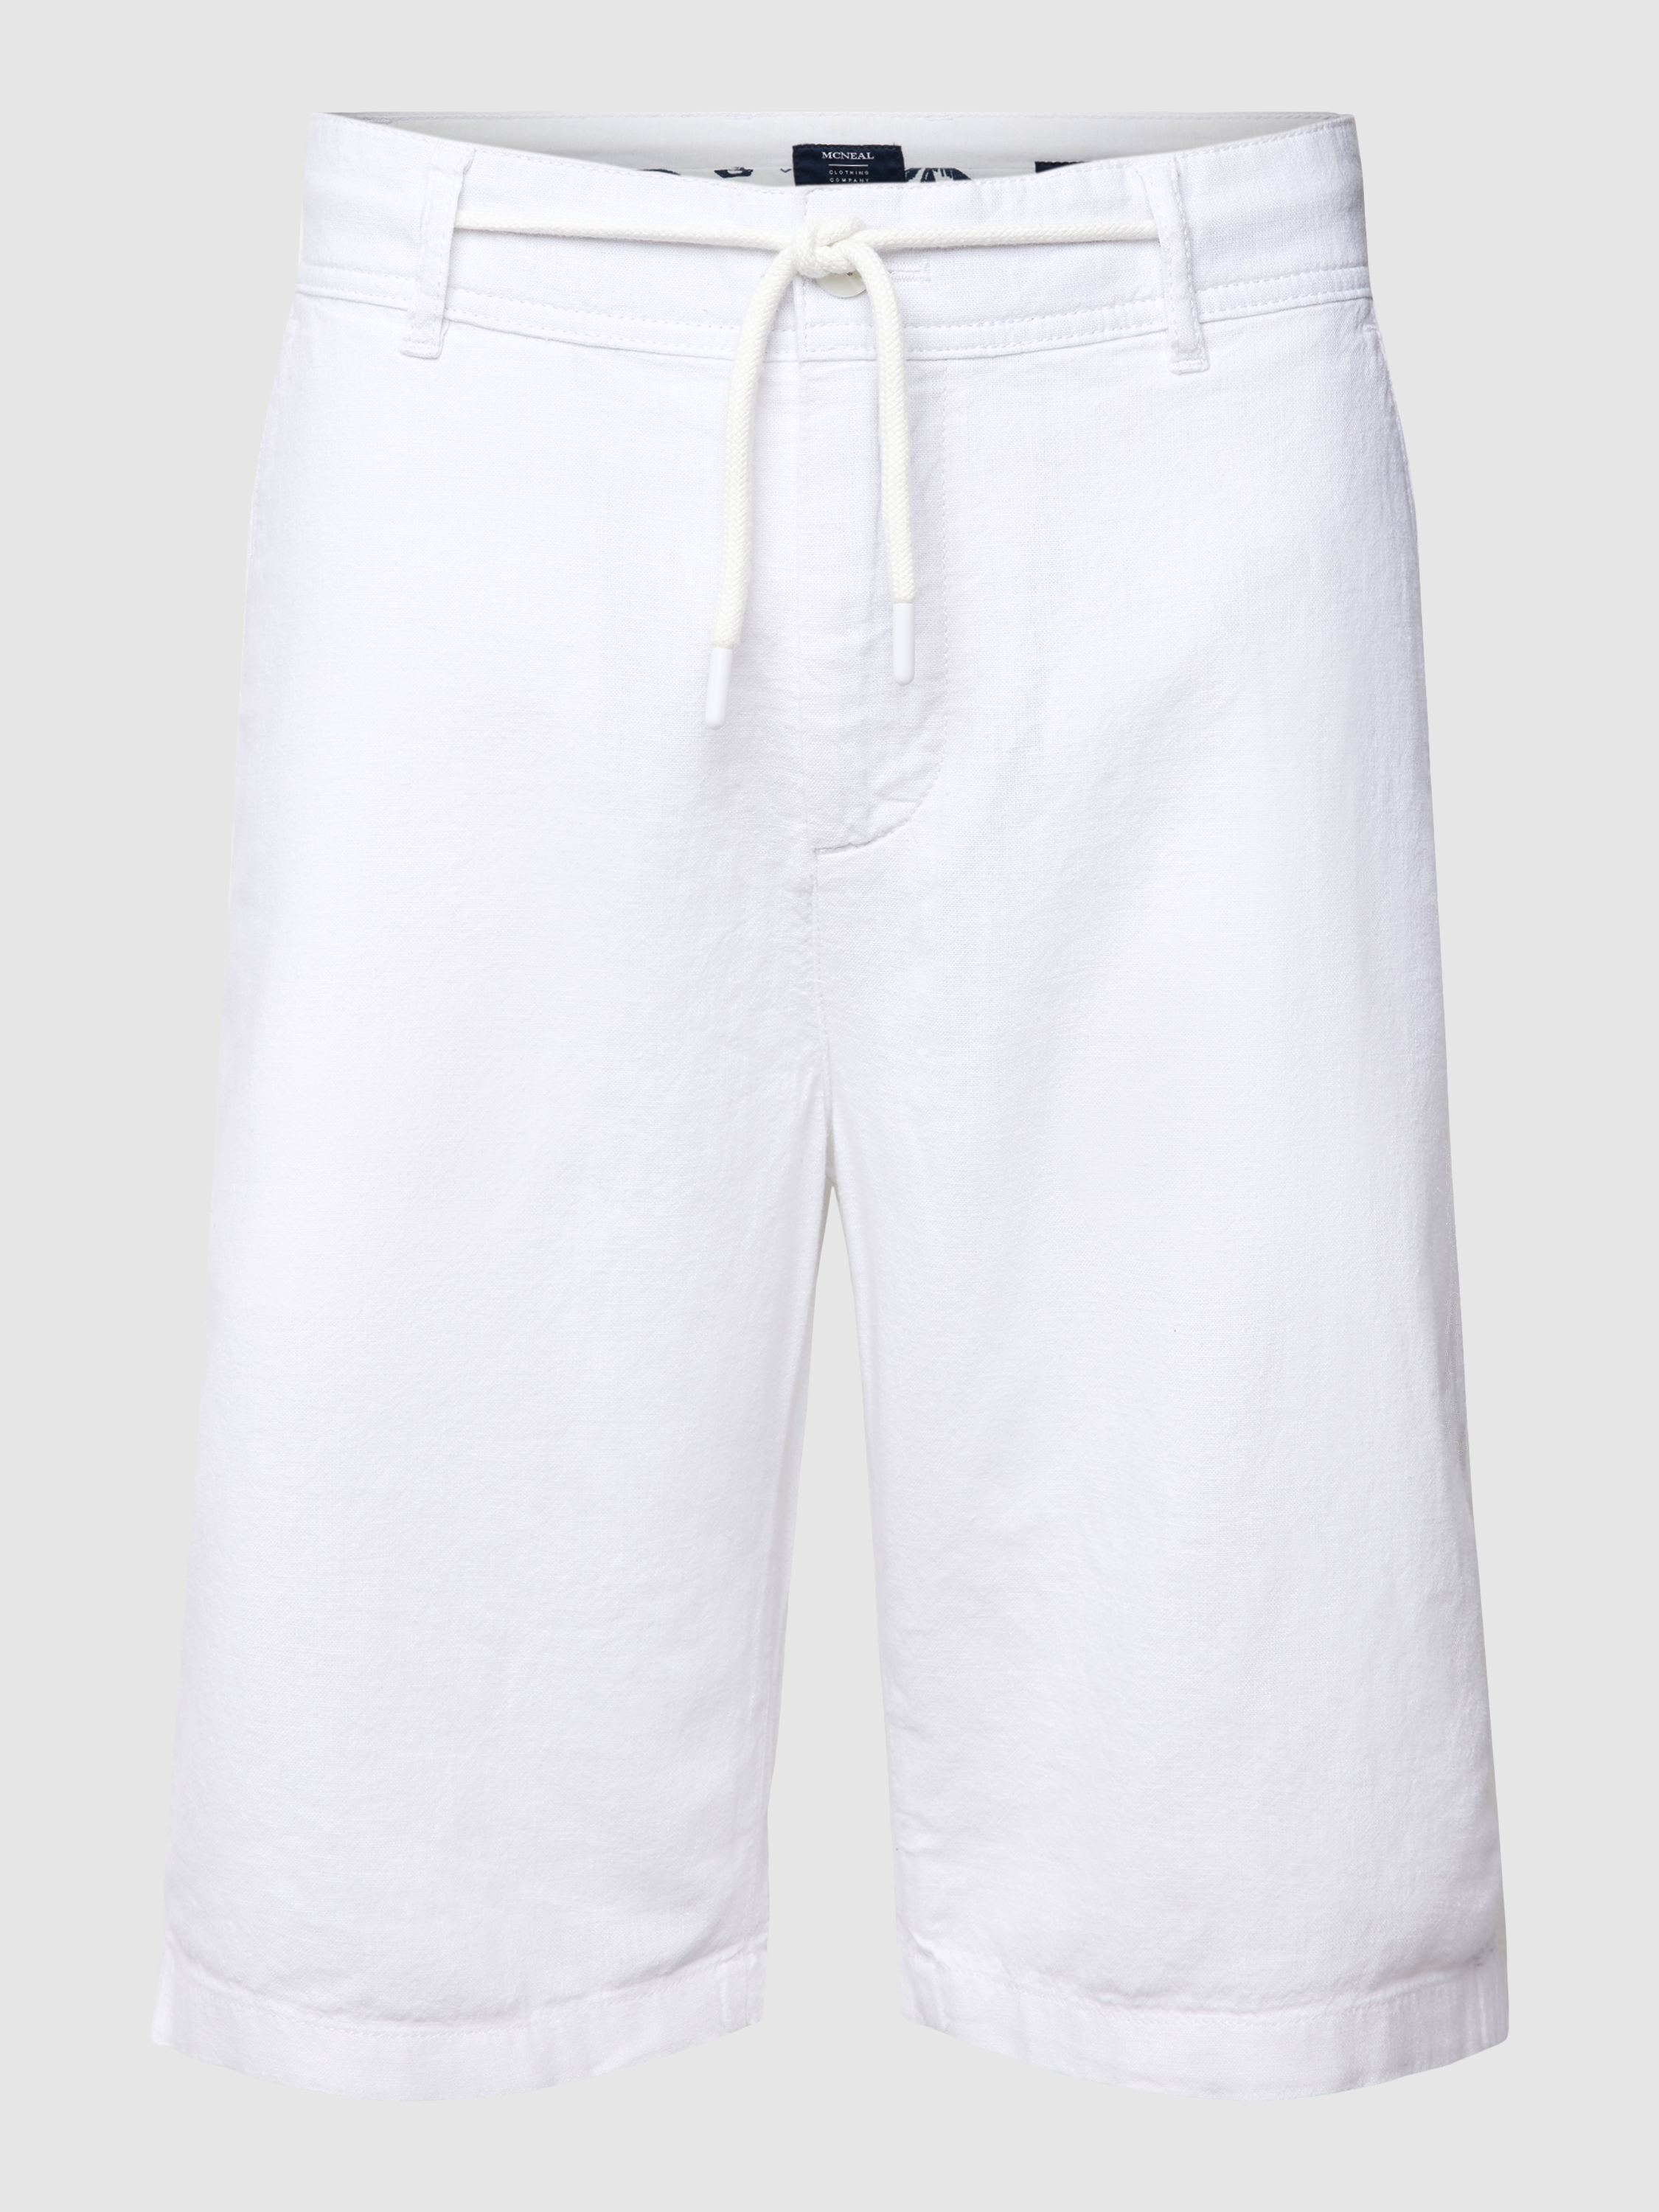 Повседневные шорты мужские McNeal 1768495 белые L (доставка из-за рубежа)